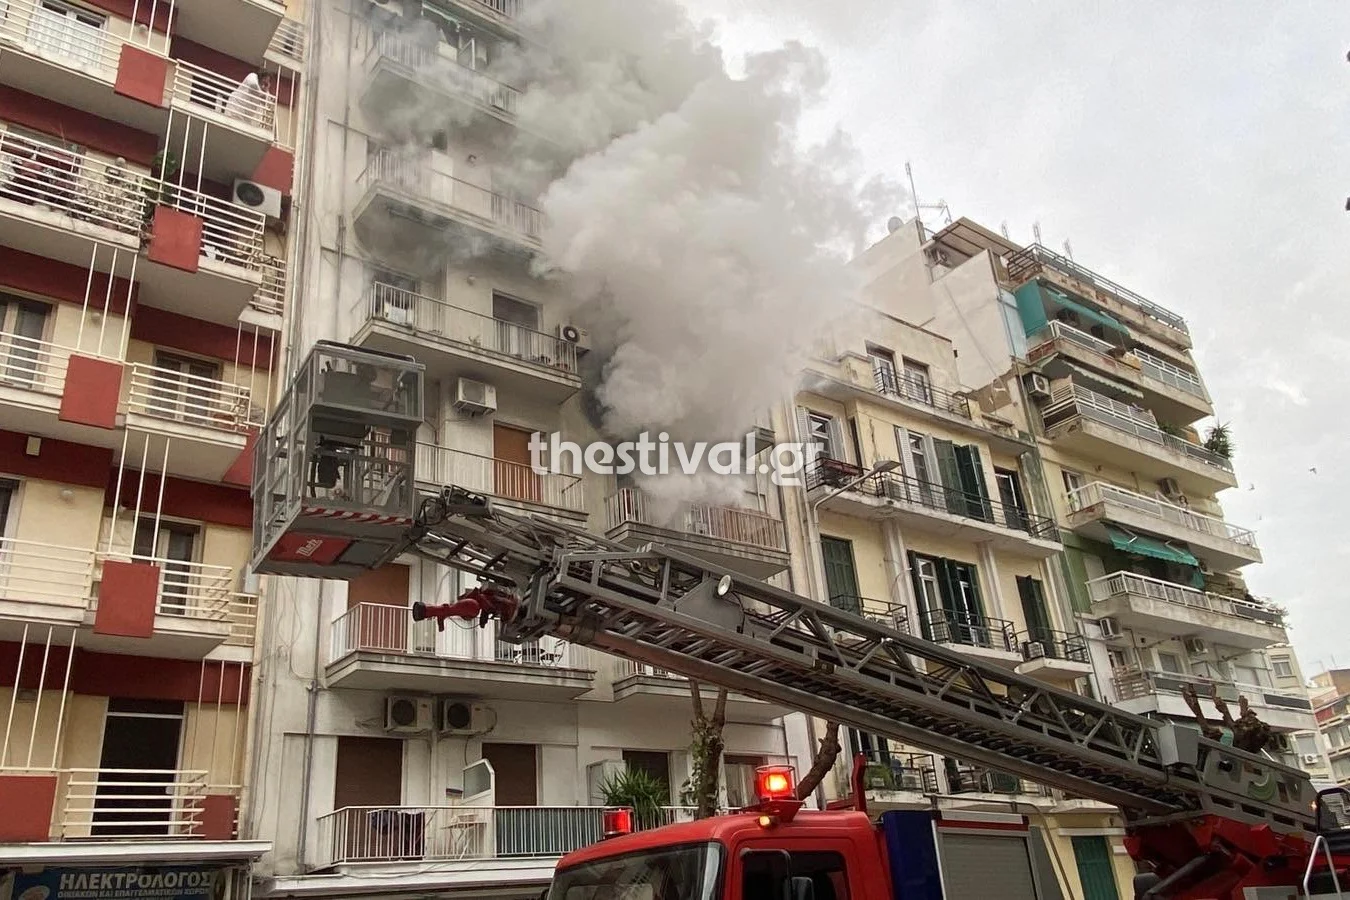 Φωτιά σε διαμέρισμα στo κέντρο της Θεσσαλονίκης – Αναφορές για εγκλωβισμένους